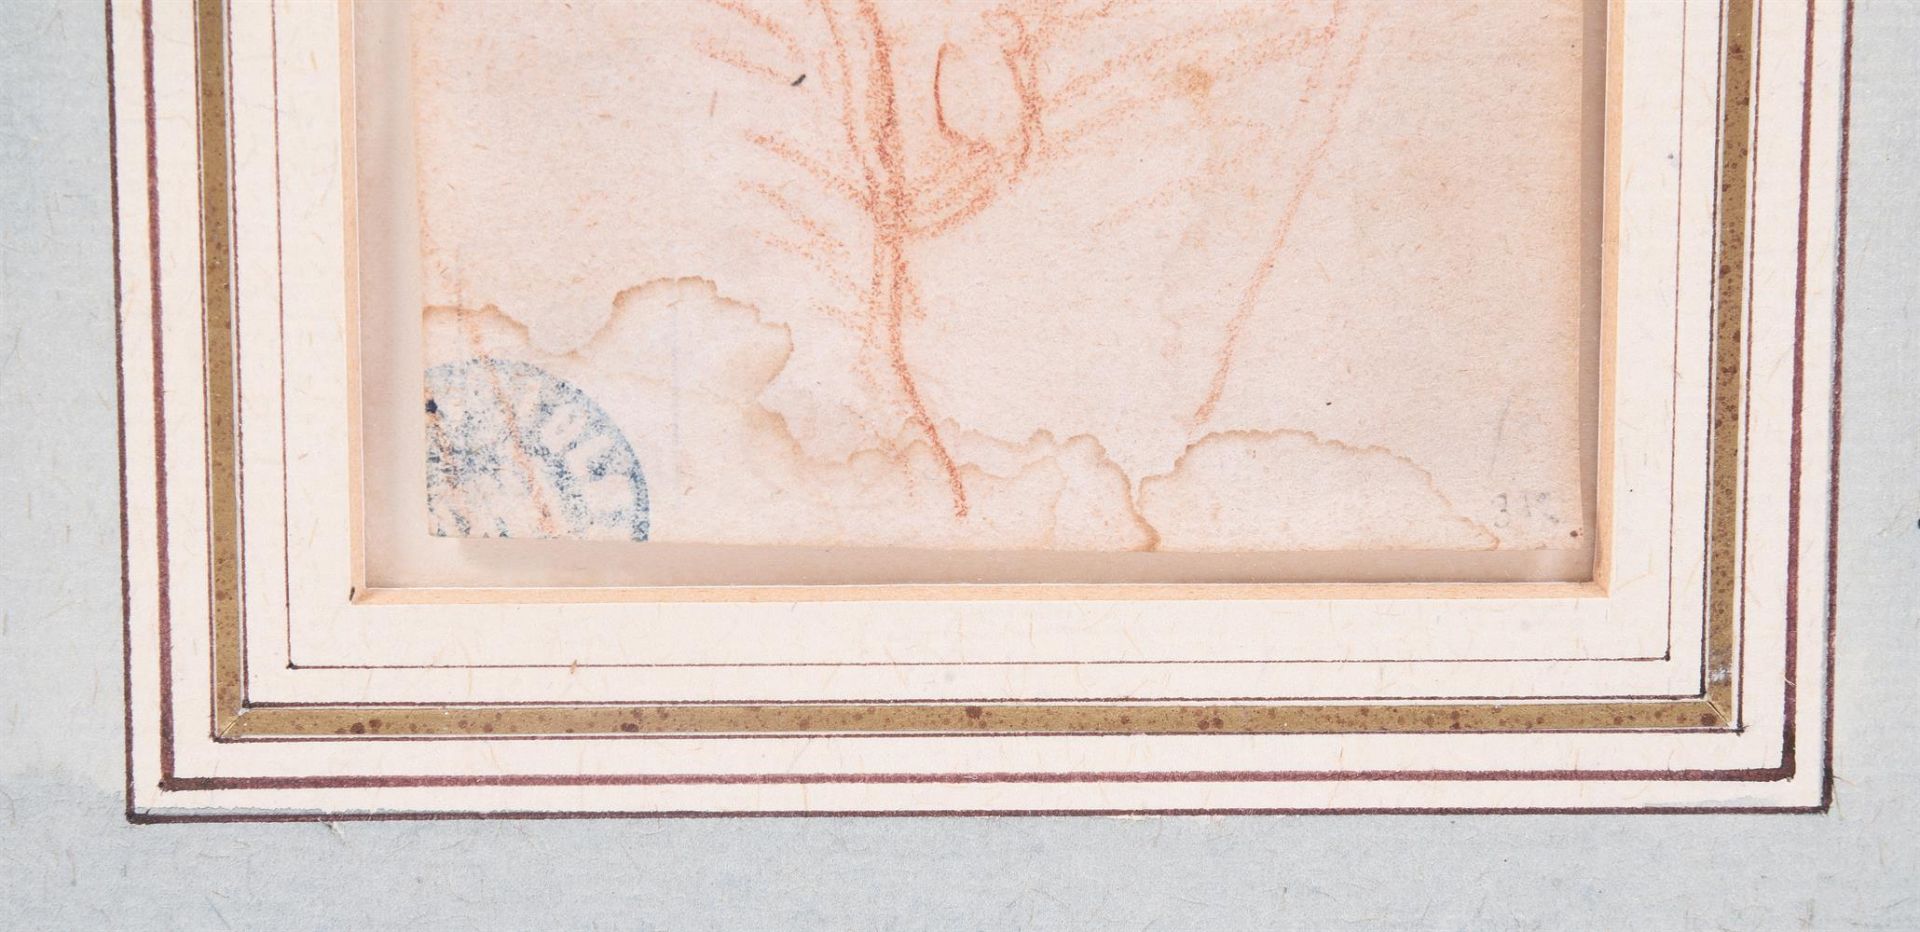 ATTRIBUTED TO MATTIA PRETI (ITALIAN 1613-1699), A STUDY OF A MALE TORSO - Image 3 of 3